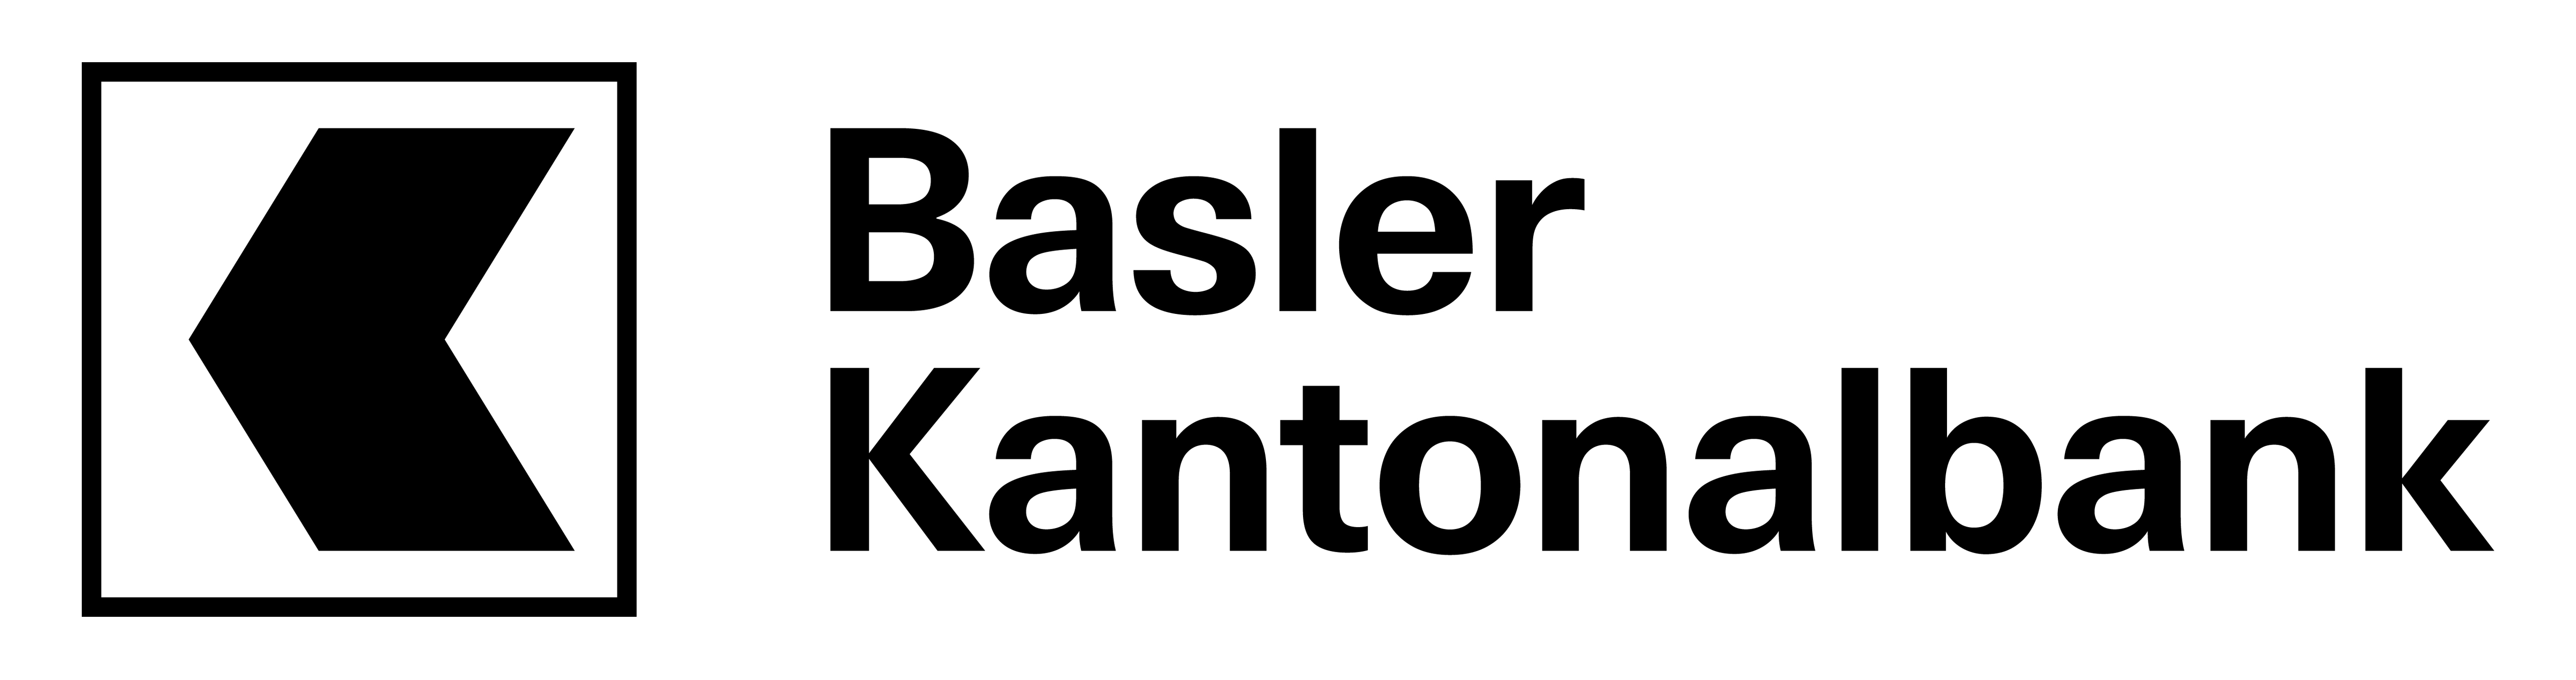 Basler Kantonalbank BKB